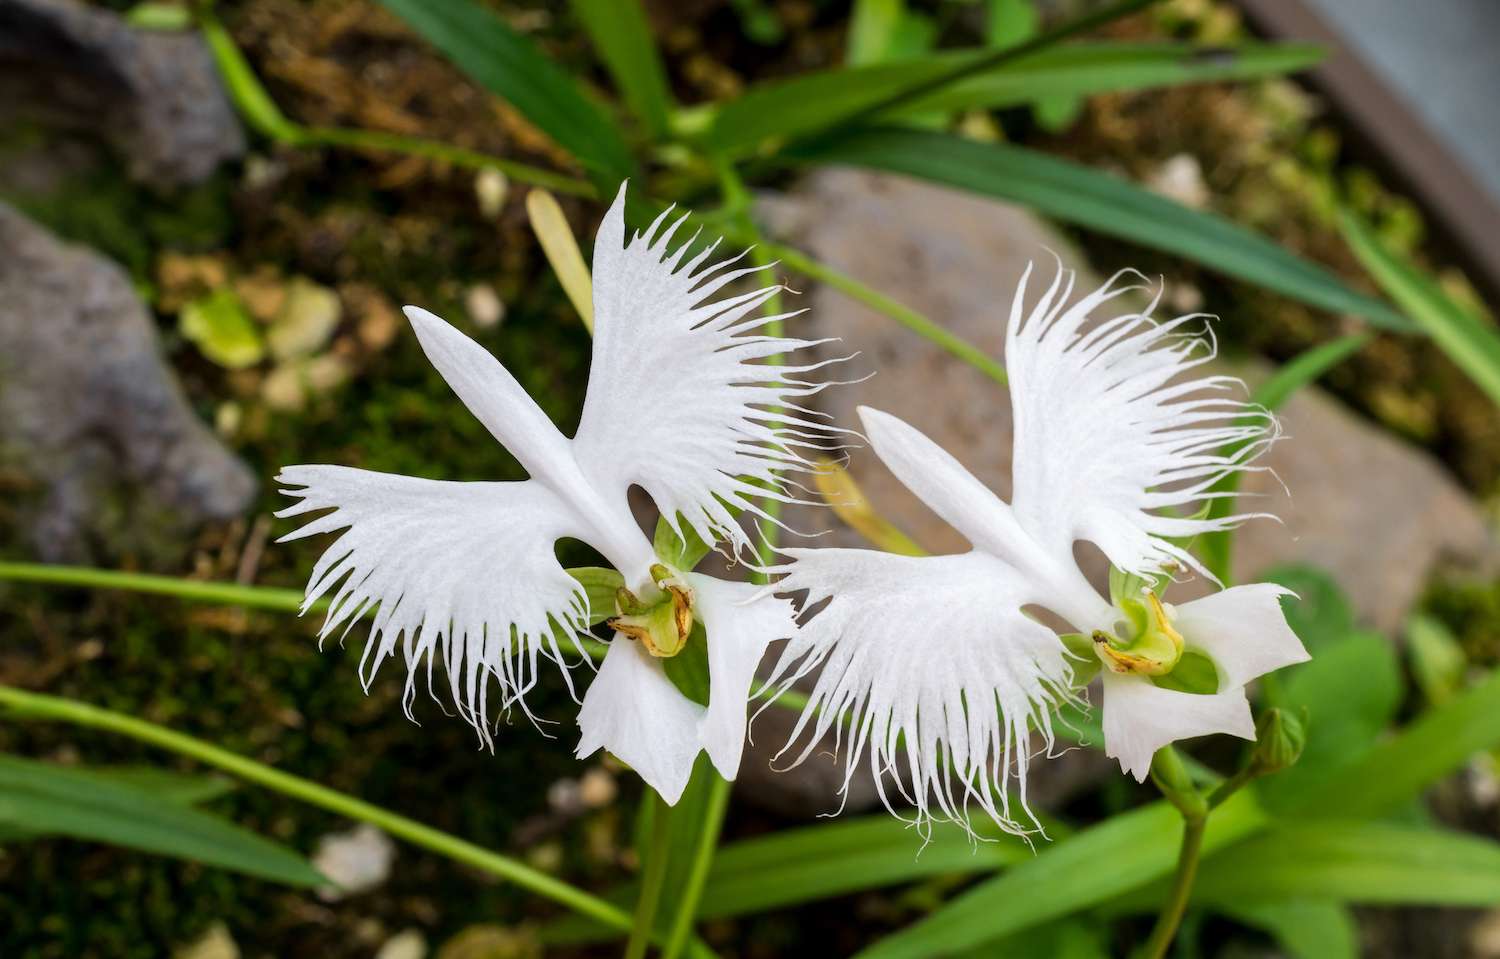 Two white egret flowers (Fringed orchid, Habenaria radiata, Sagiso), flying effect